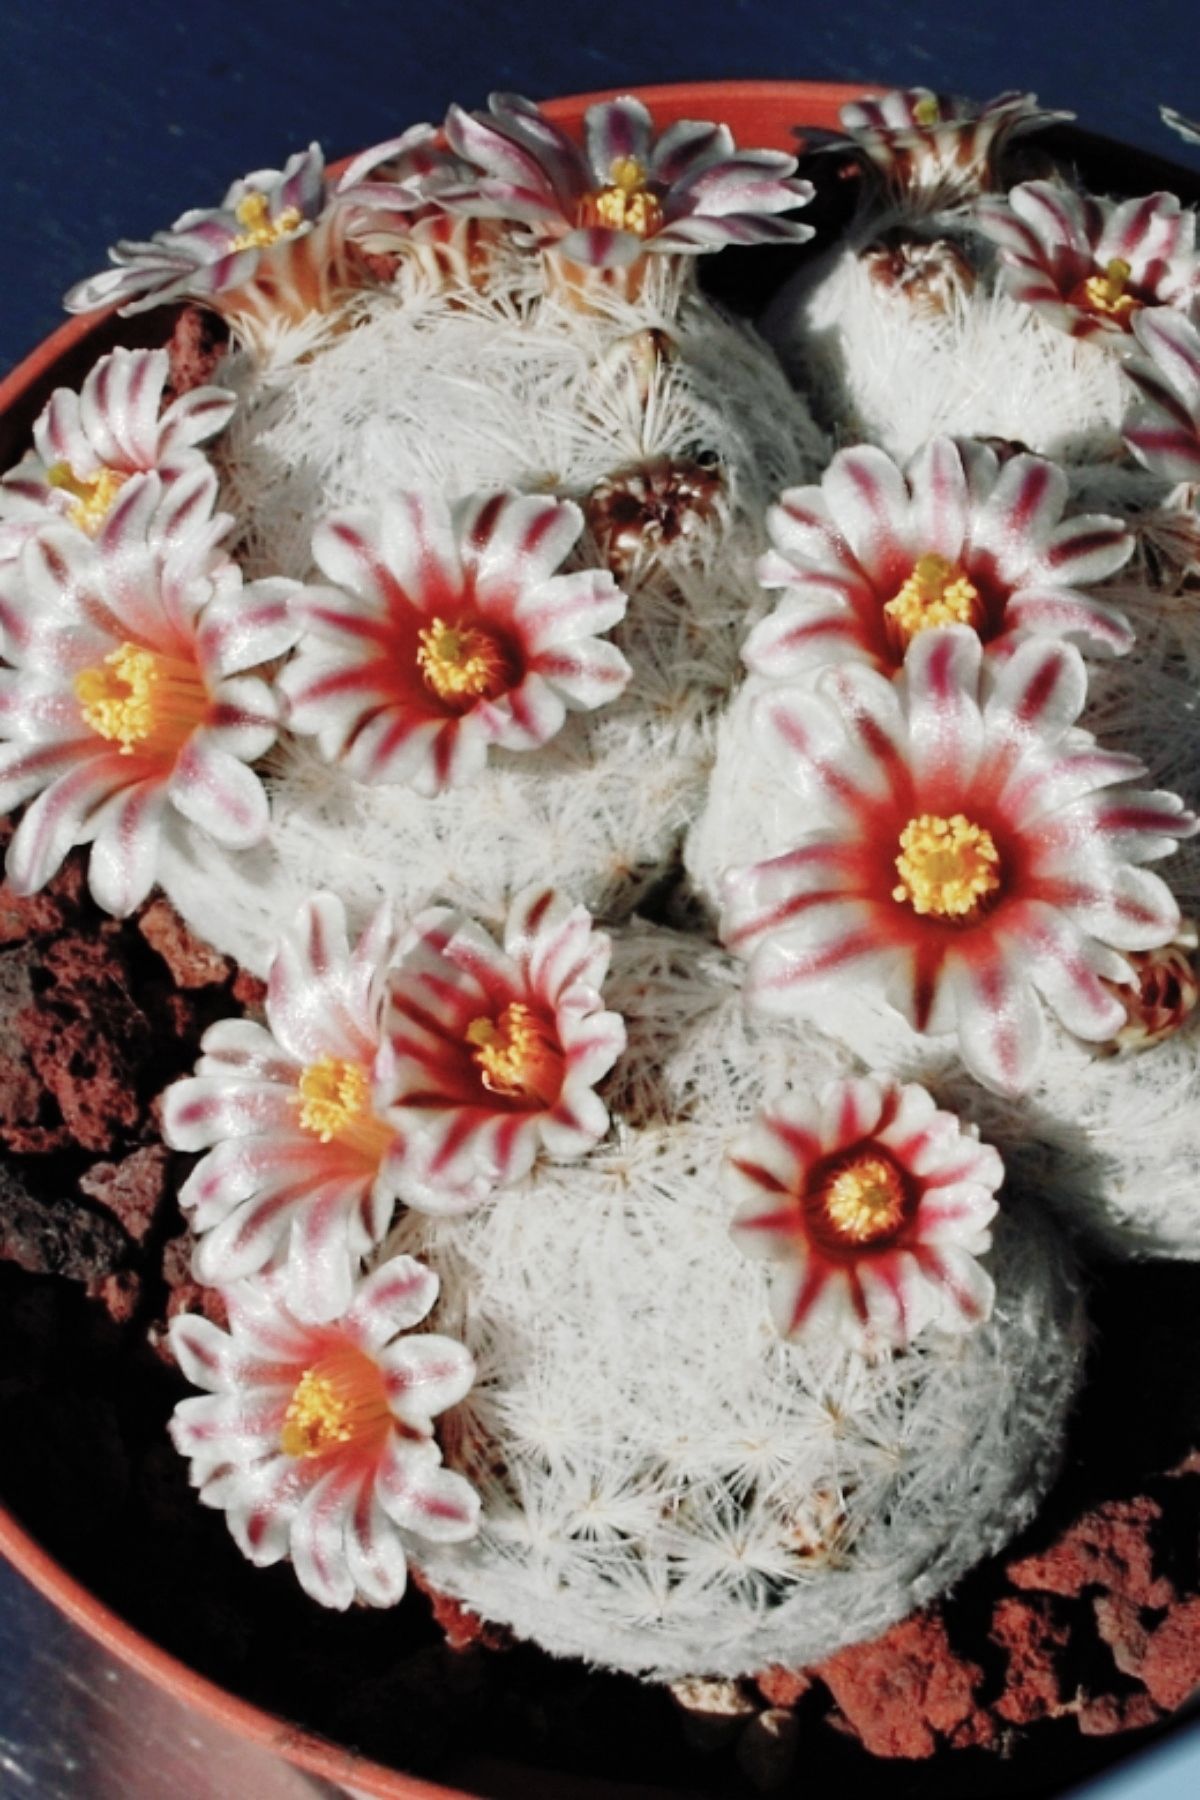 ÇİÇEKFLİX Pamuk prenses kaktüs sukulent 5.5cm mini boy/şuan çiçeksizdir